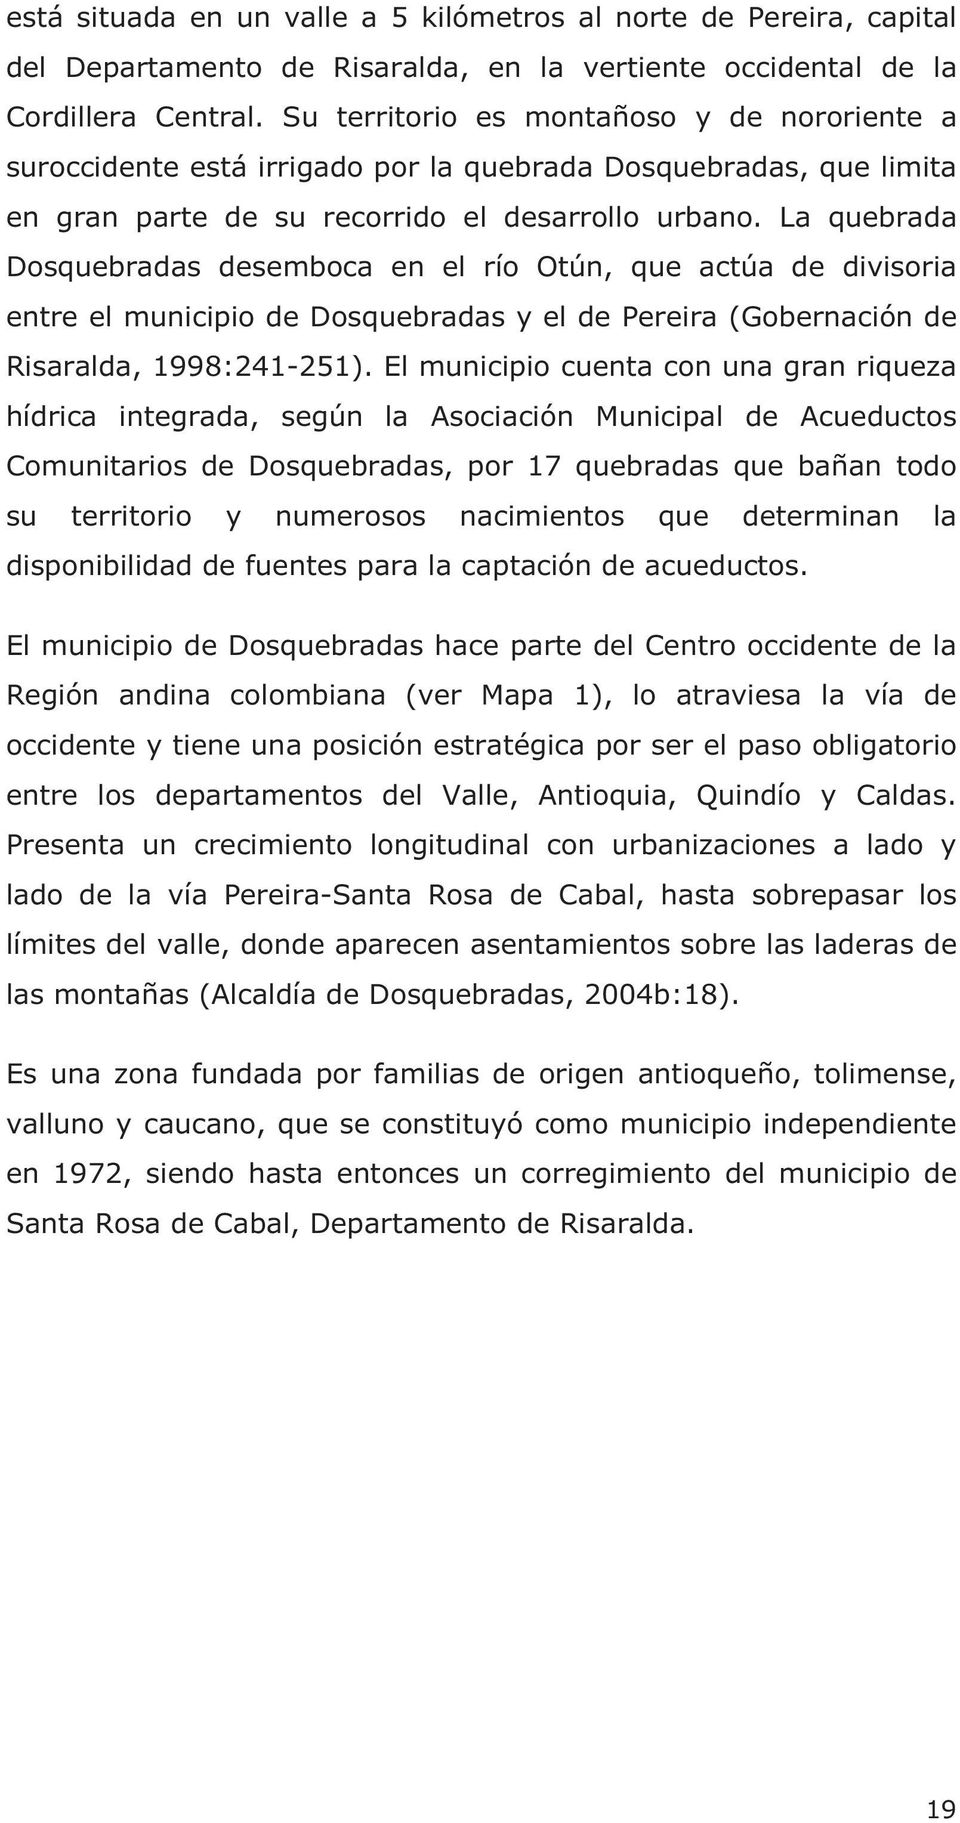 La quebrada Dosquebradas desemboca en el río Otún, que actúa de divisoria entre el municipio de Dosquebradas y el de Pereira (Gobernación de Risaralda, 1998:241-251).